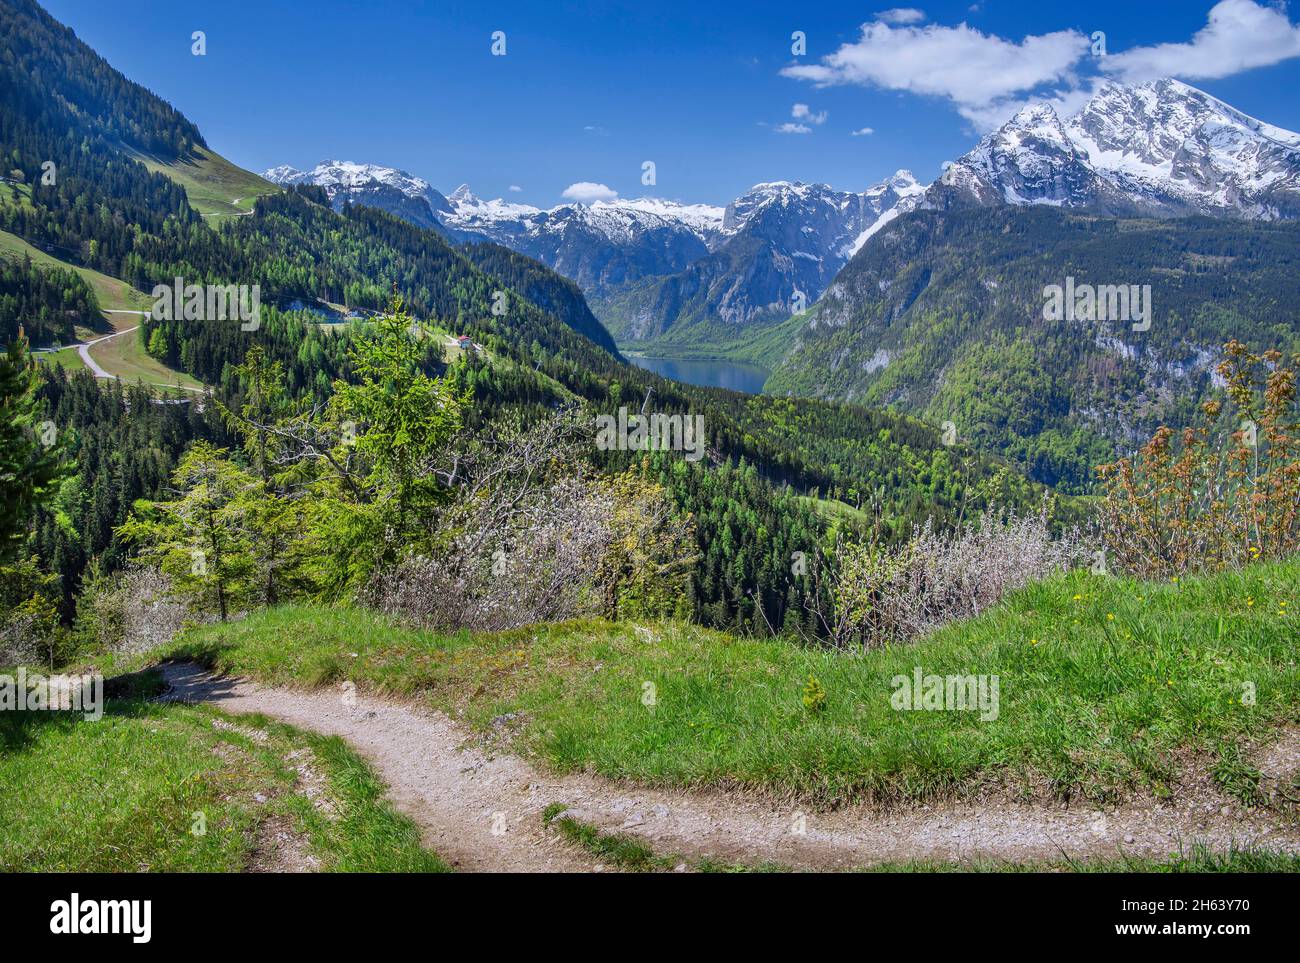 Wanderweg zum Aussichtspunkt brandkopf mit königssee, Steinernem Meer und watzmann 2713m, schönau am königssee, berchtesgadener alpen, berchtesgadener Land, oberbayern, bayern, deutschland Stockfoto